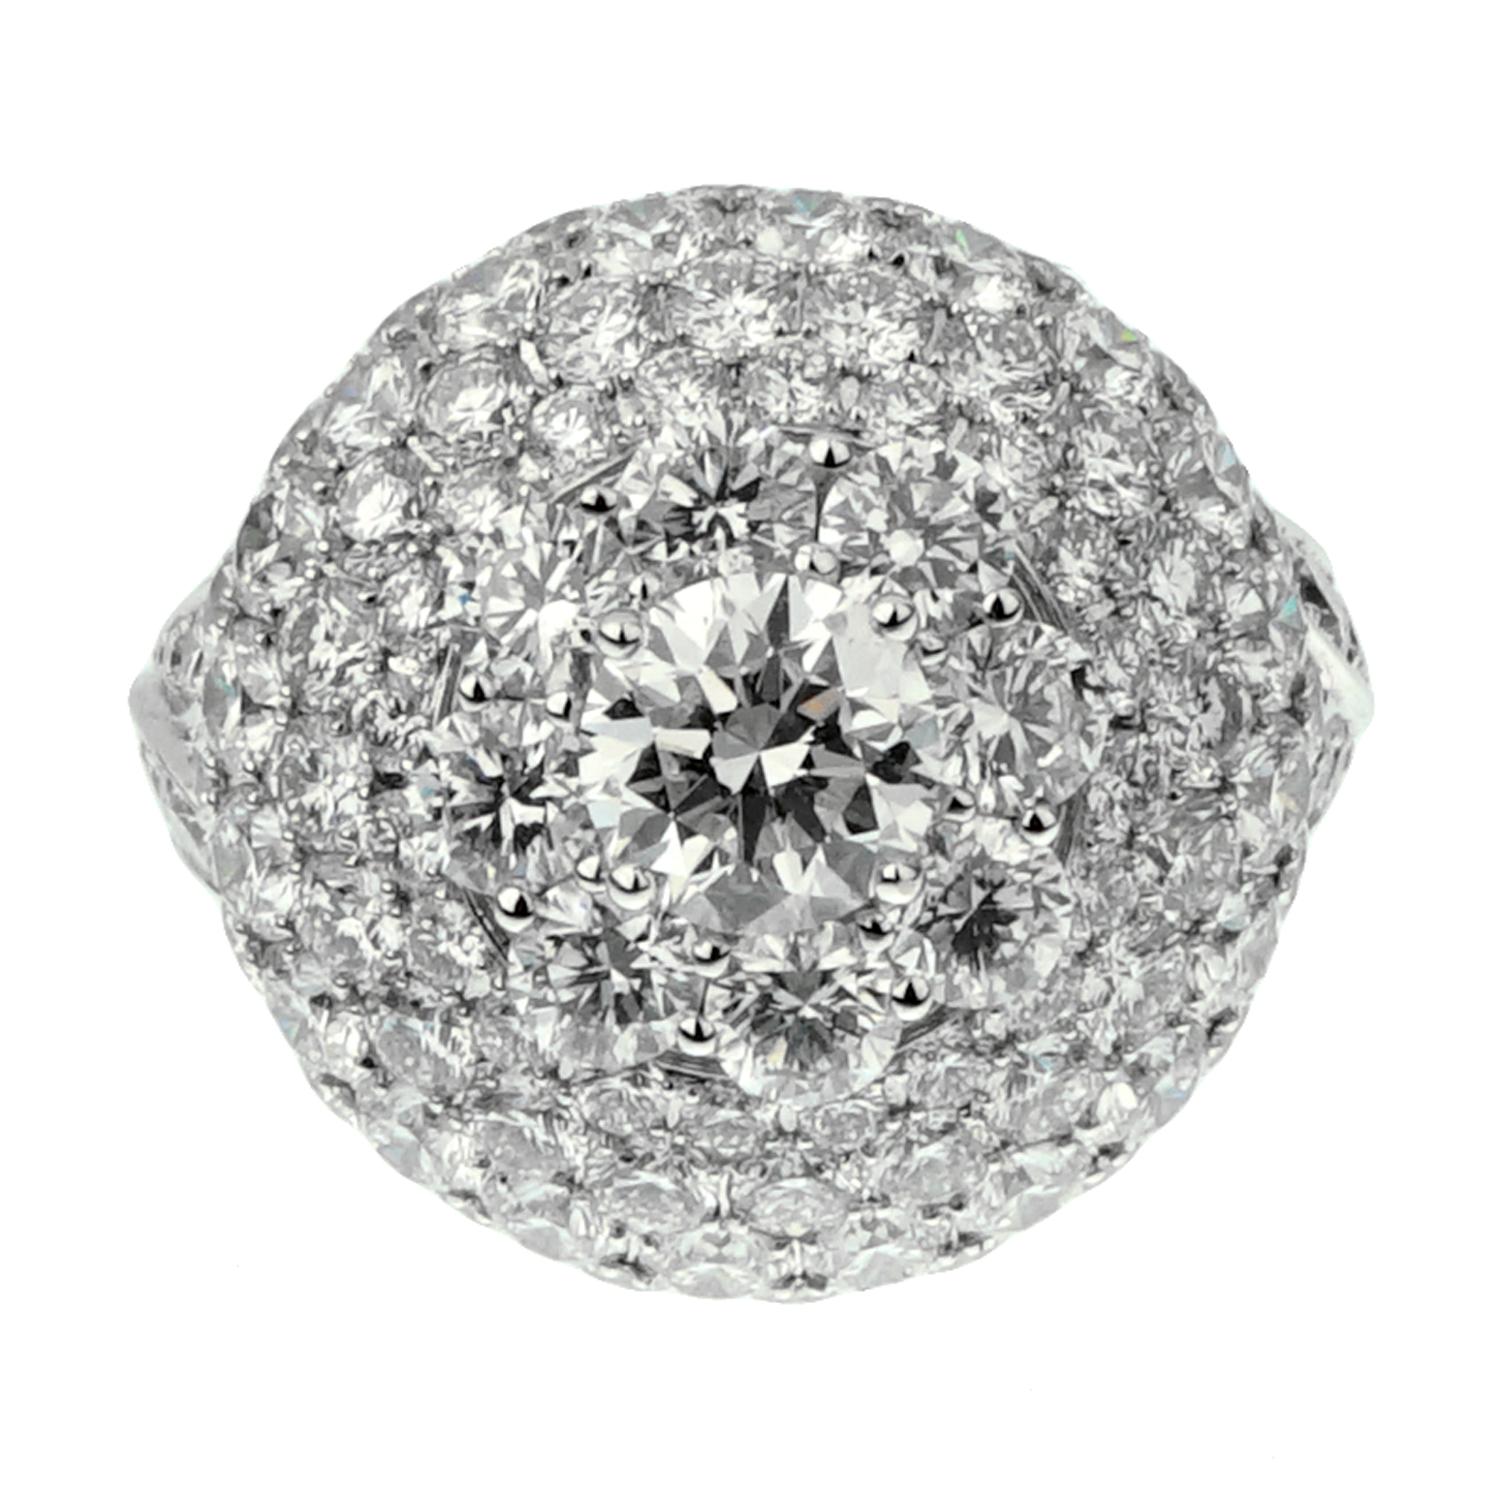 Une incroyable bague en diamant Graff présentant environ 10,08 cts des plus beaux diamants ronds de taille brillant, sertis dans un luxueux or blanc 18 carats. L'anneau pèse 12 grammes, mesure 4 3/4 et peut être redimensionné si nécessaire. L'anneau